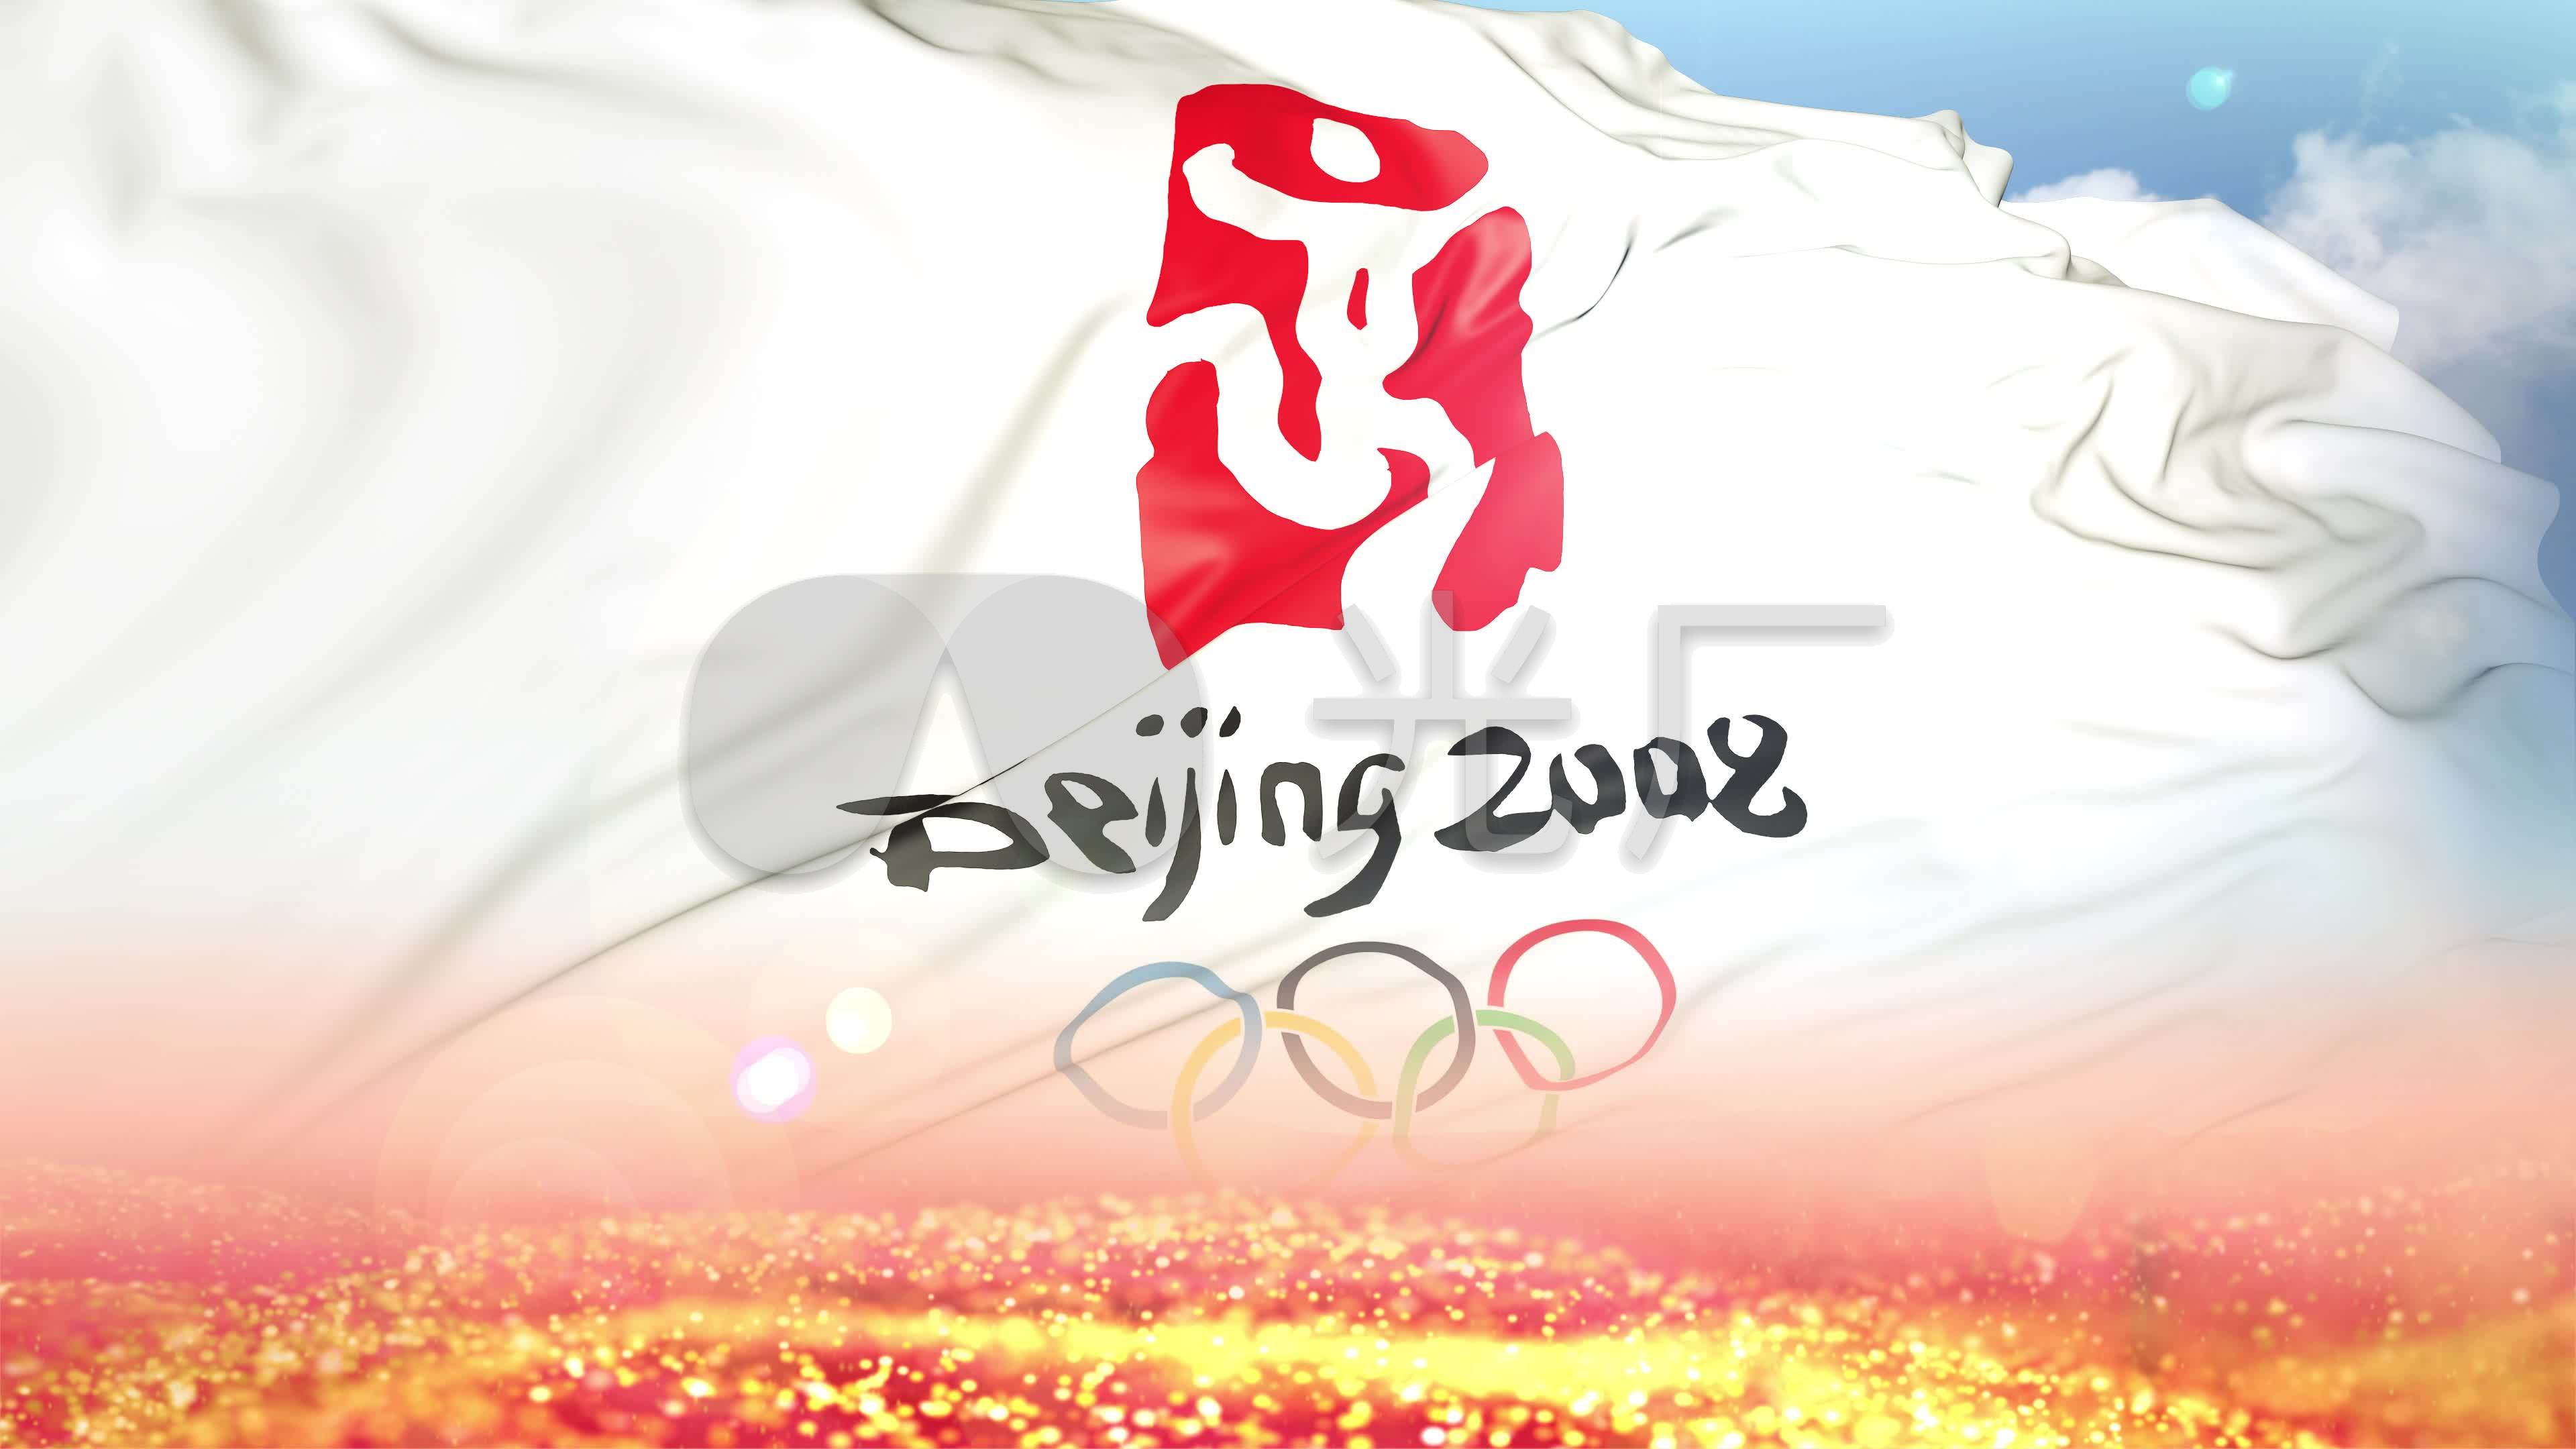 2008北京奥运会旗子背景